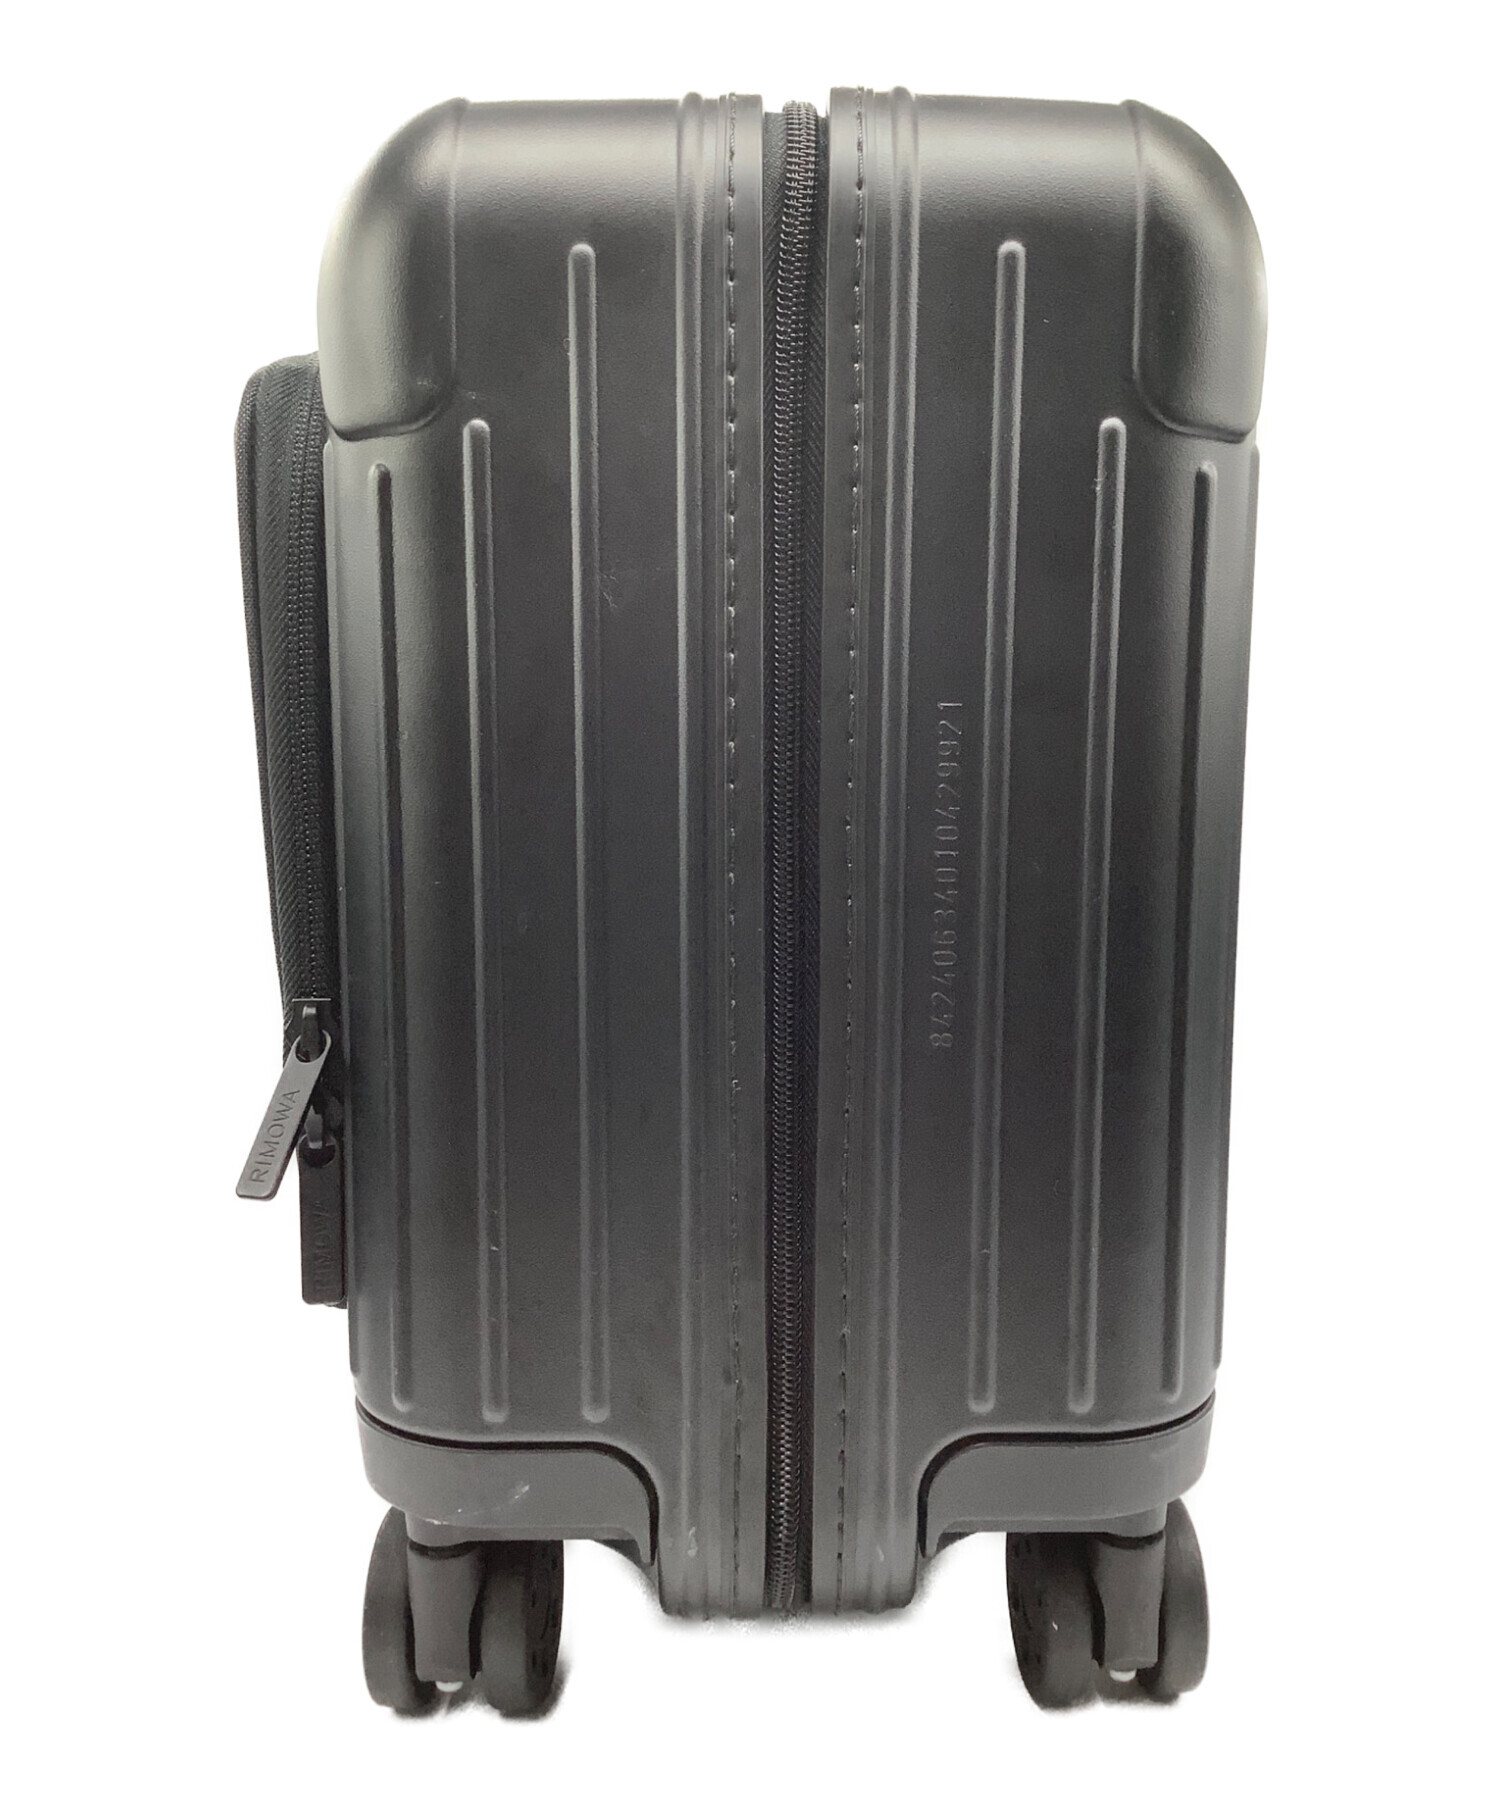 RIMOWA (リモワ) コンパクトスーツケース マットブラック